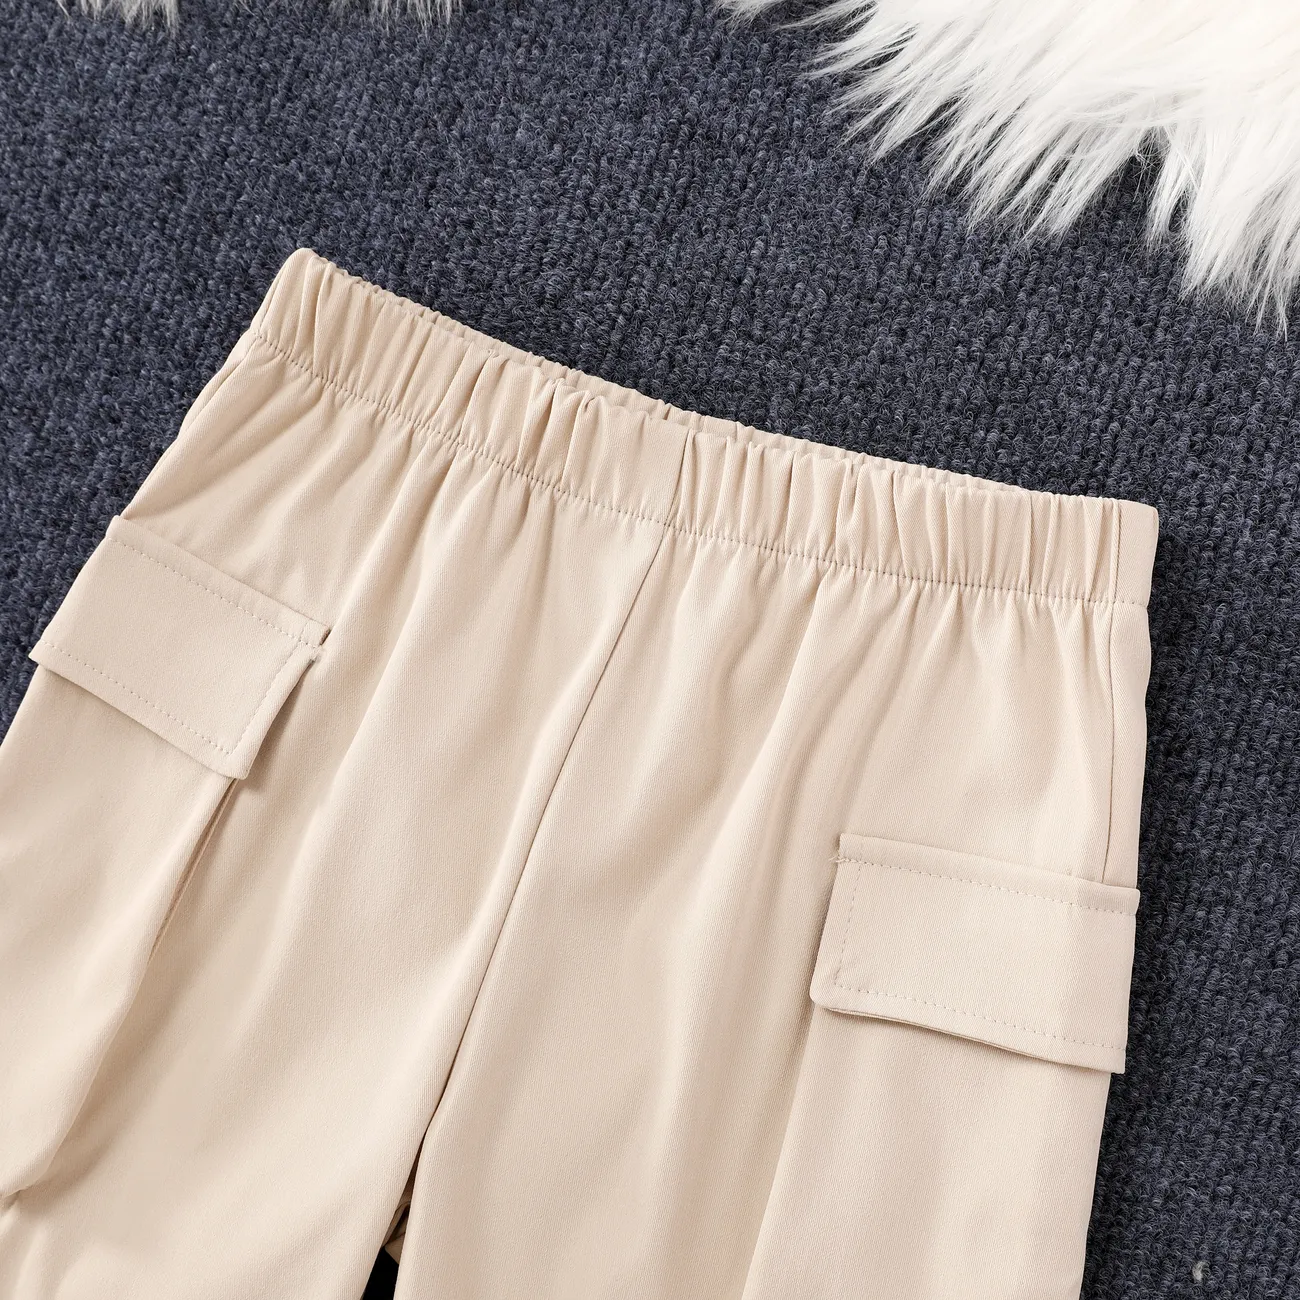 Pantalones cortos casuales de poliéster para niño con bolsillos - Color liso Caqui big image 1